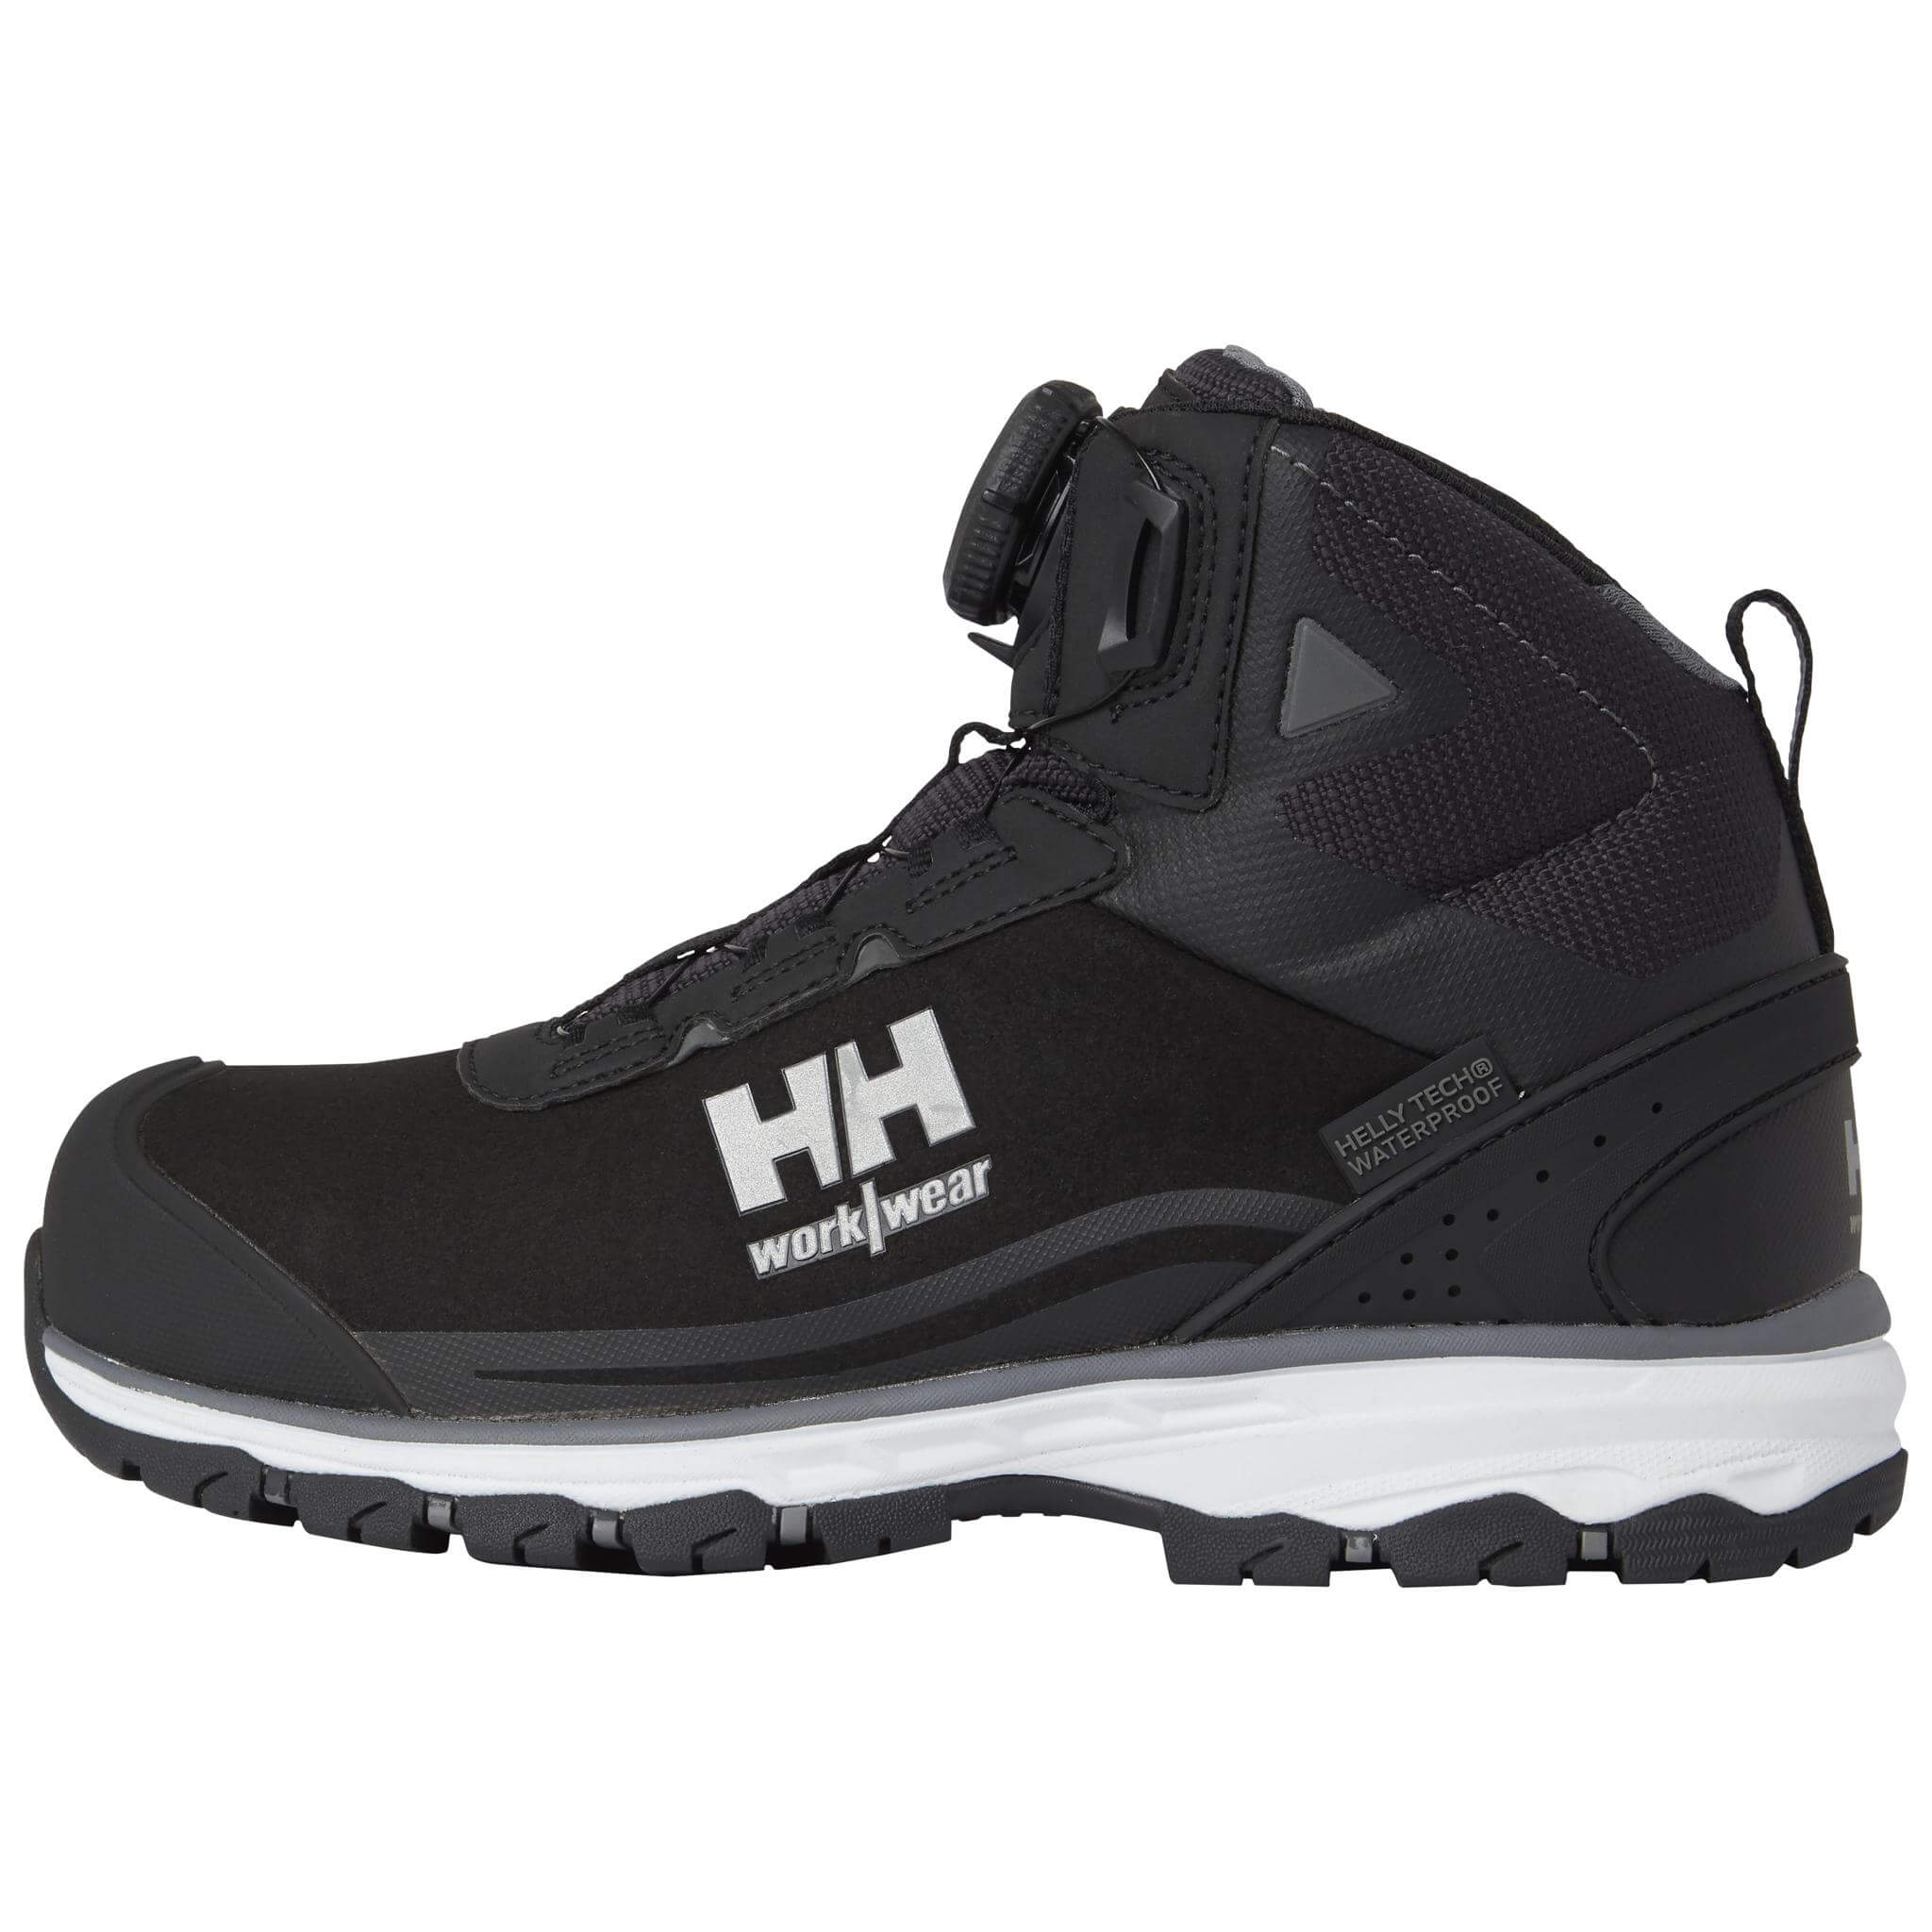 Helly Hansen Work Boots - Helly Safety Range workweargurus.com